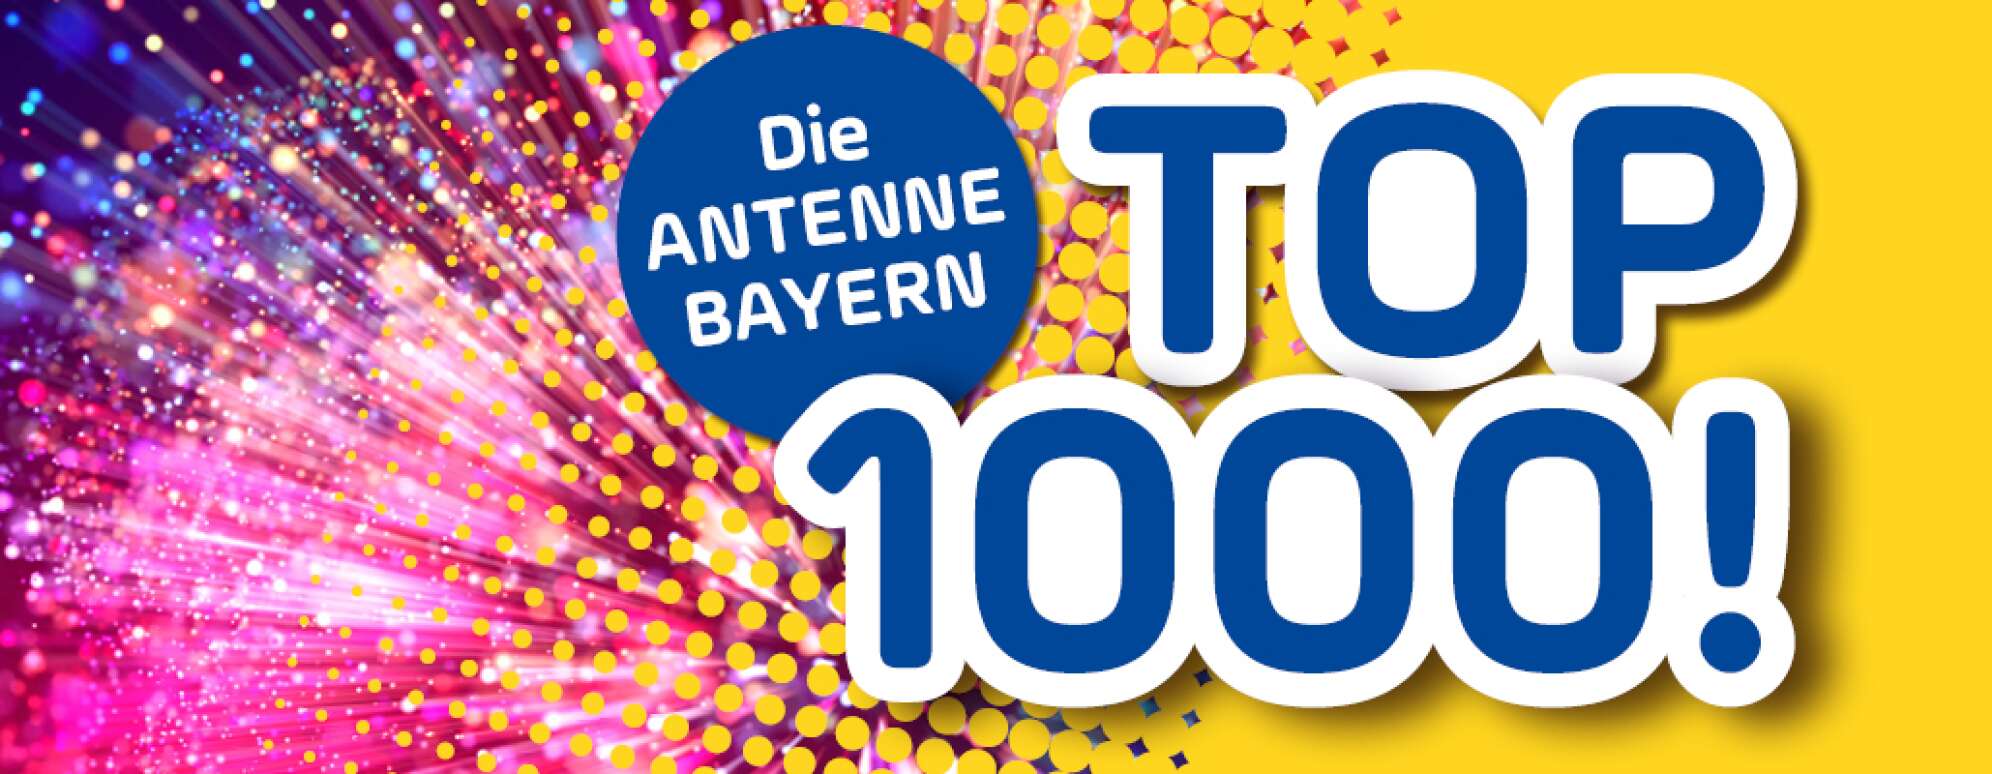 Top 1000 Aktion-Visual